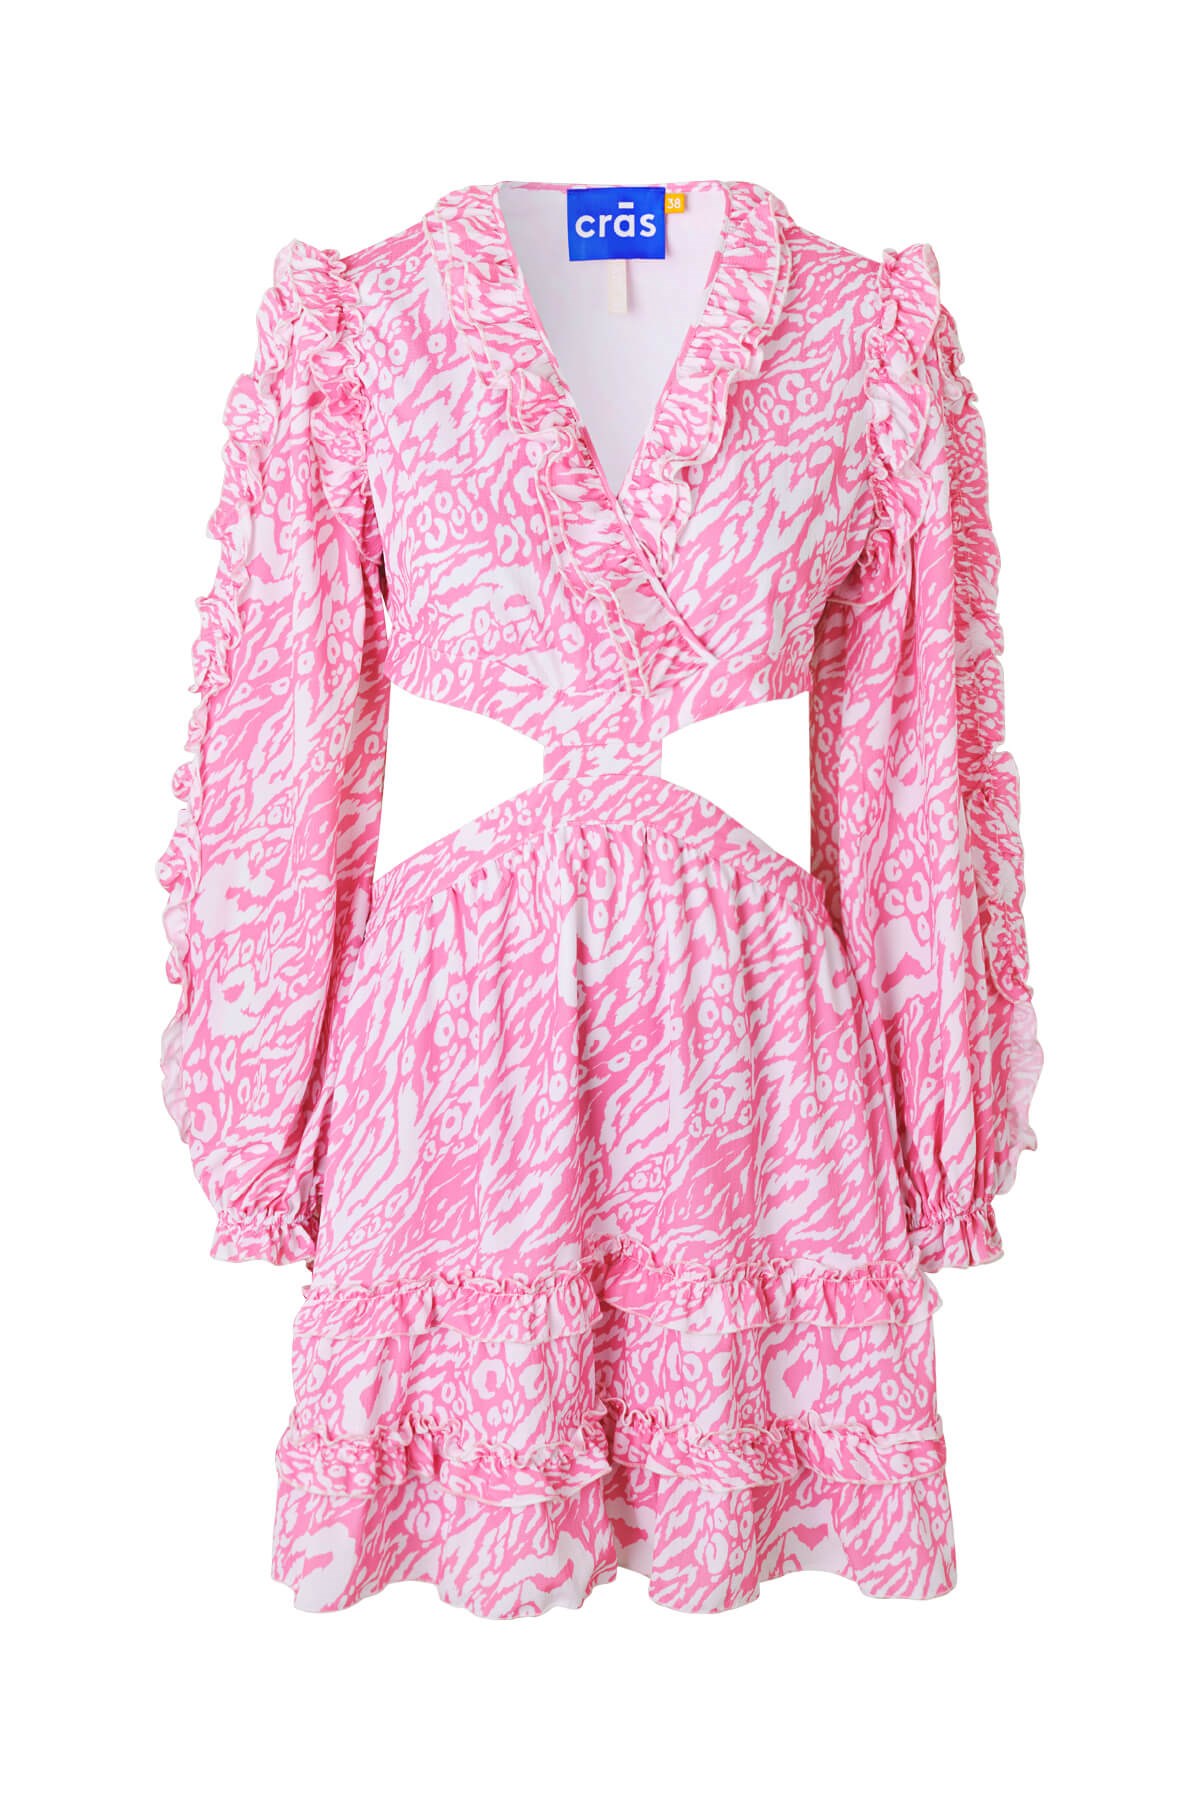 CRAS - Babettecras Dress, Pink | Køb hos Sirup